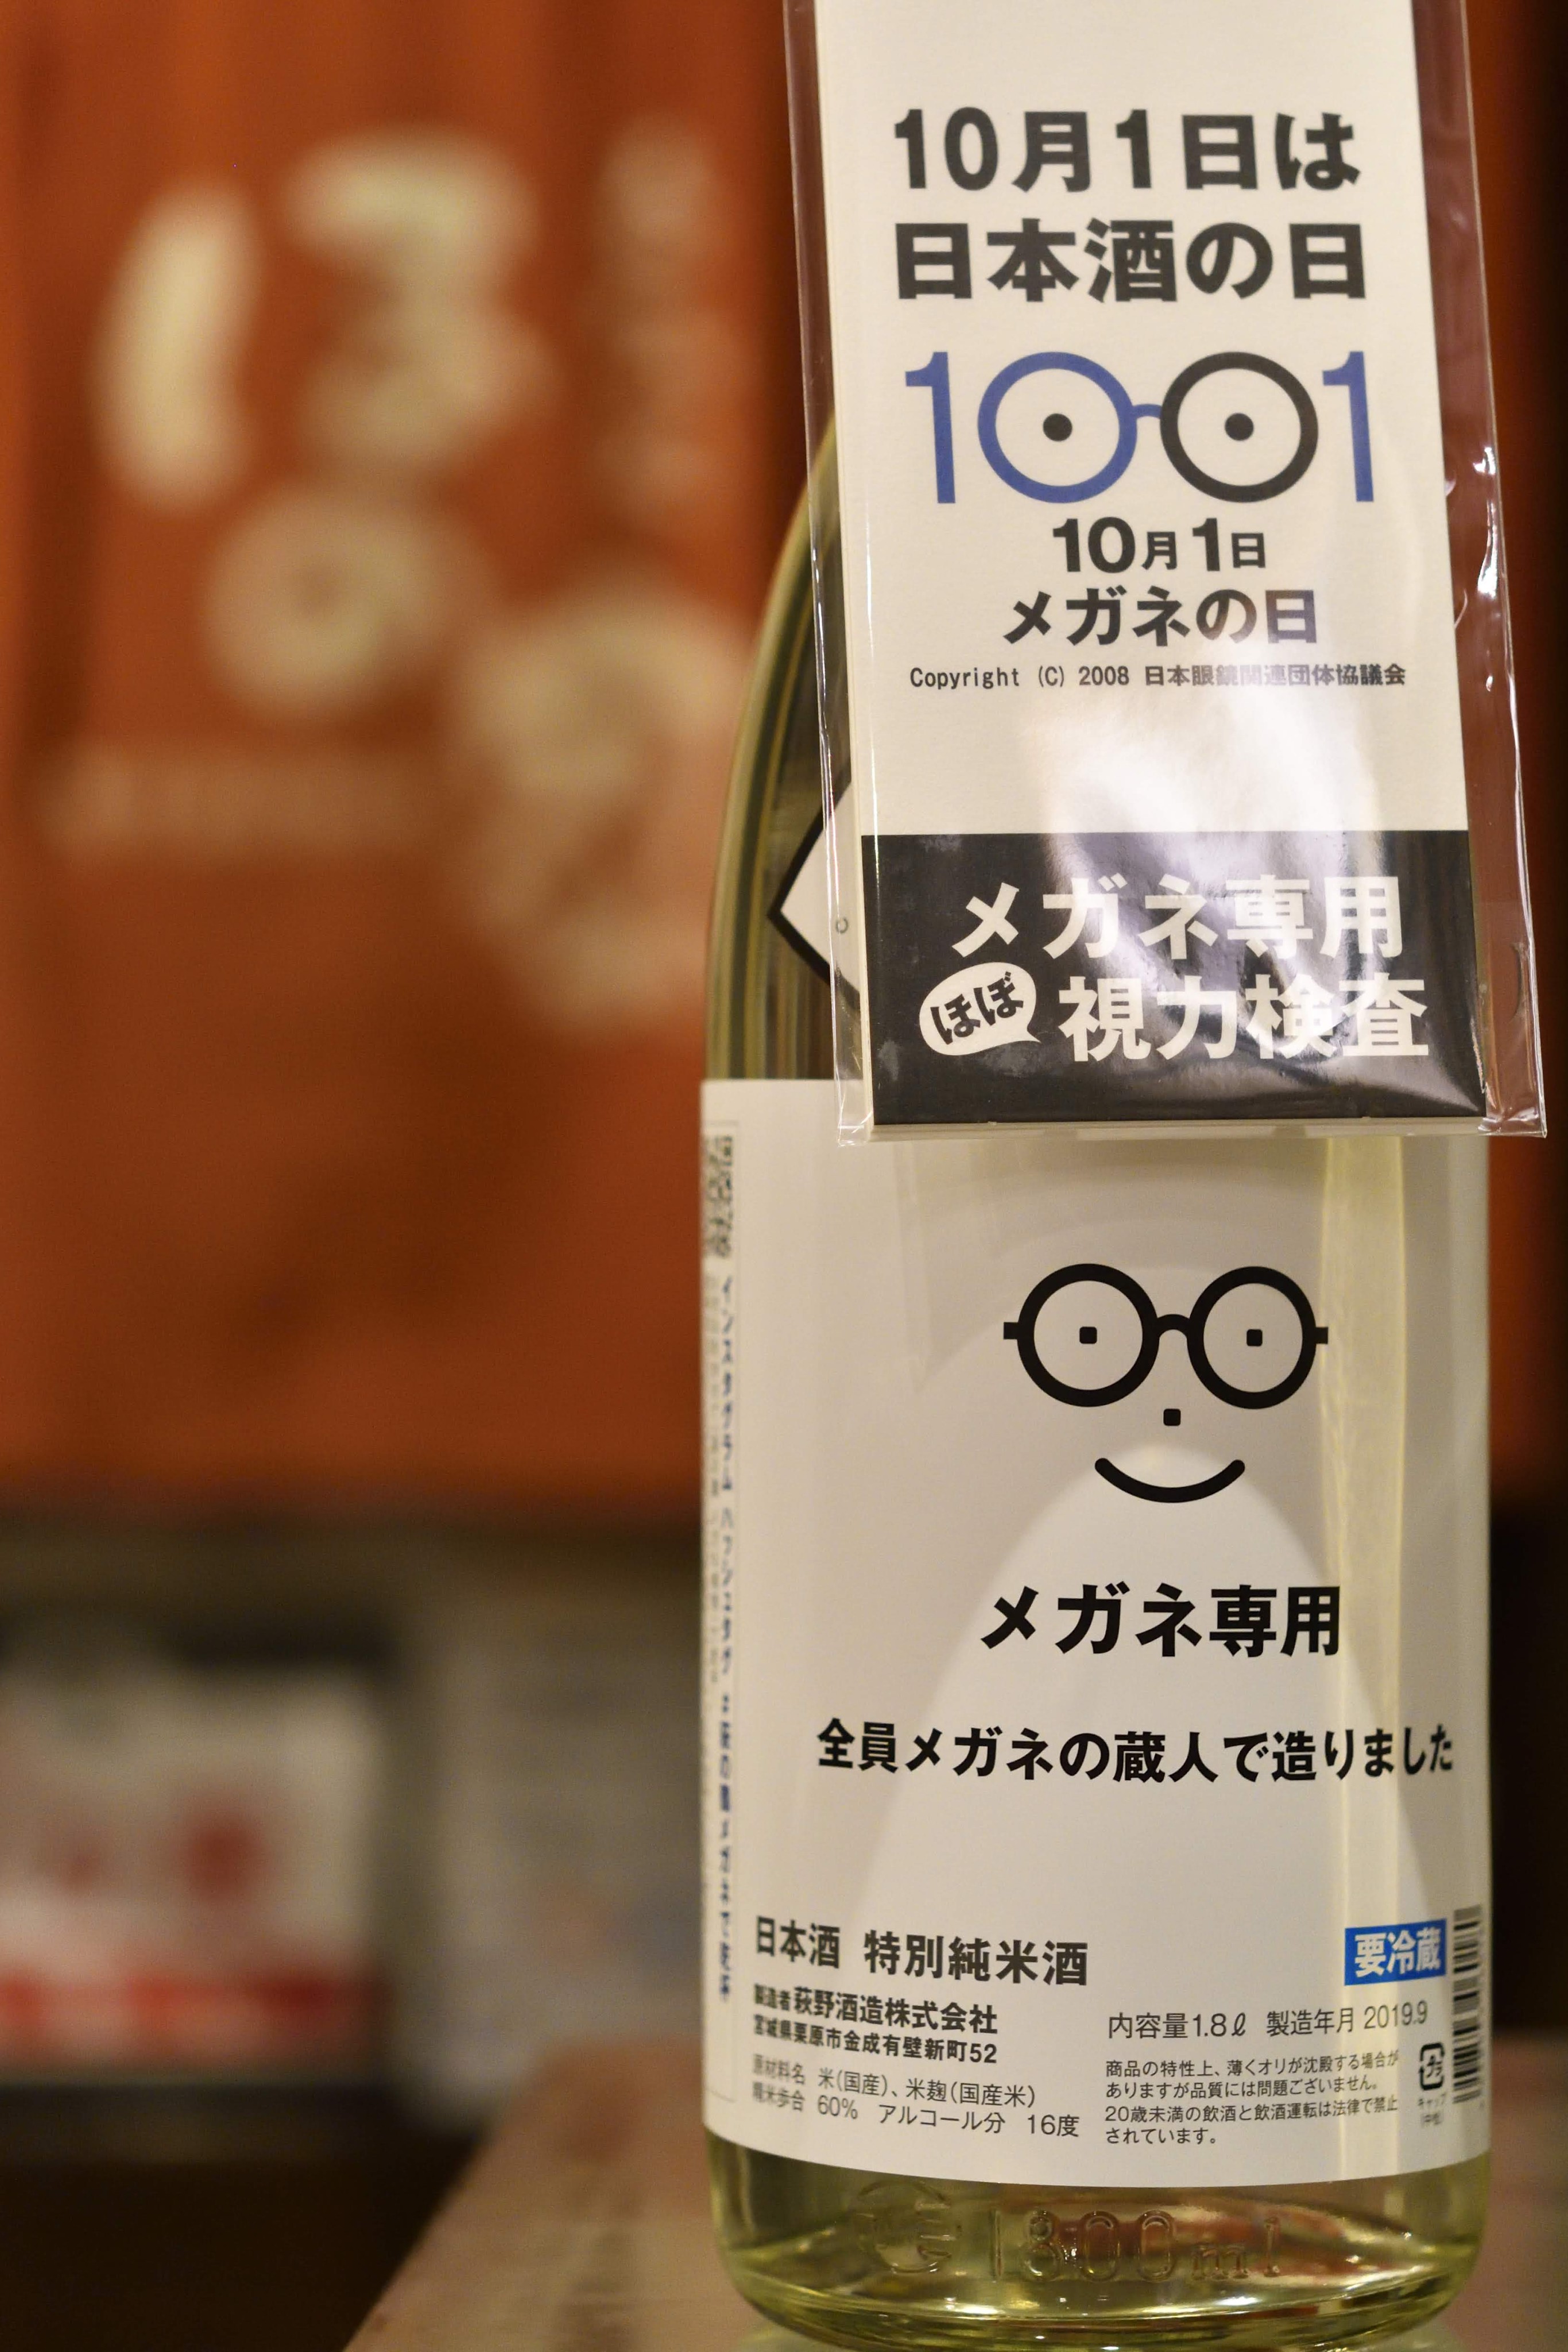 萩の鶴 メガネ専用 特別純米酒